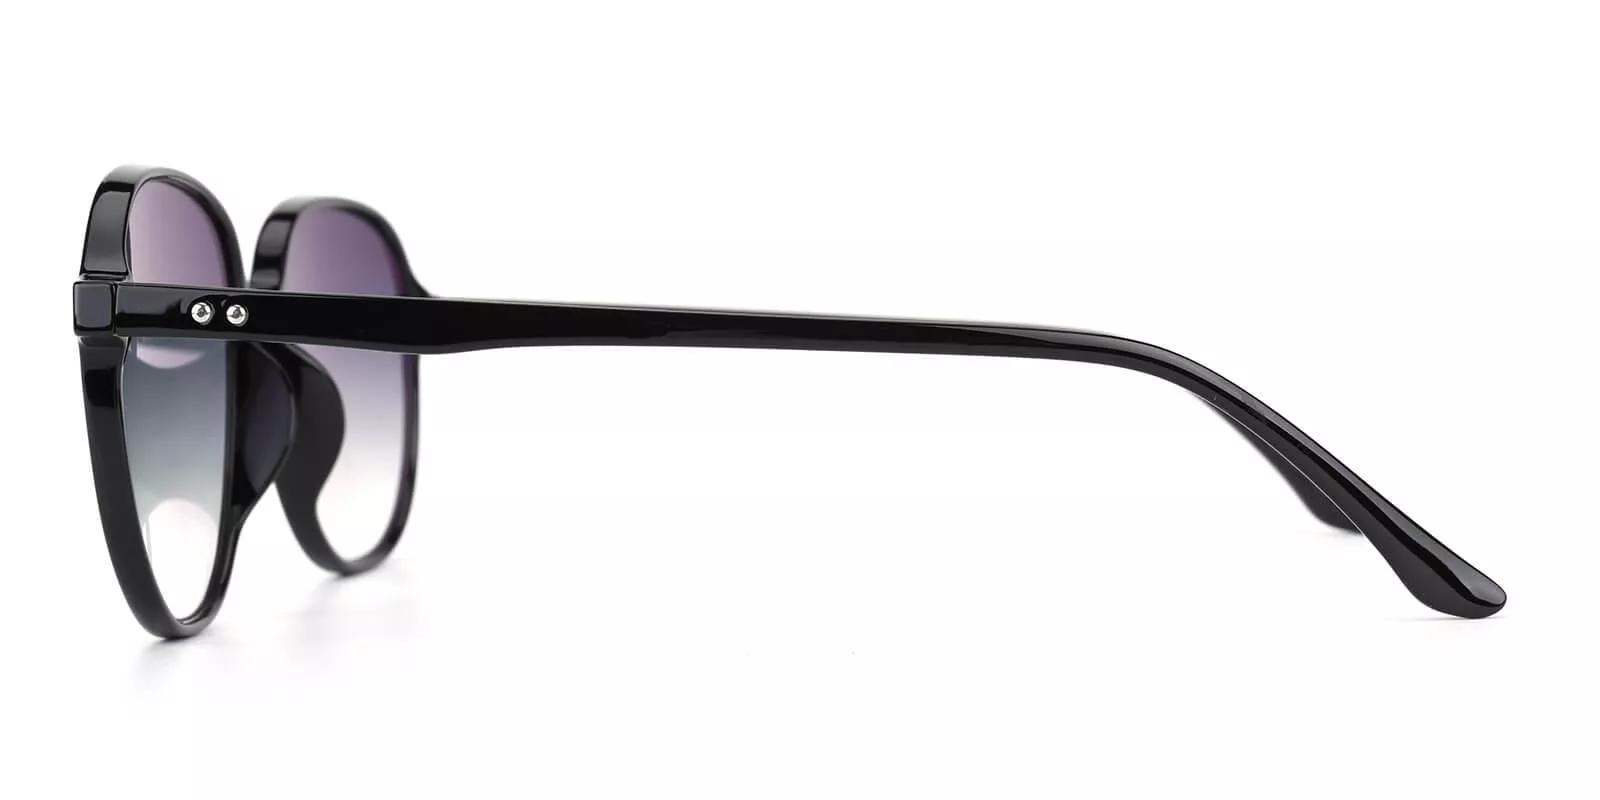 Palm Bay Prescription Sunglasses Black